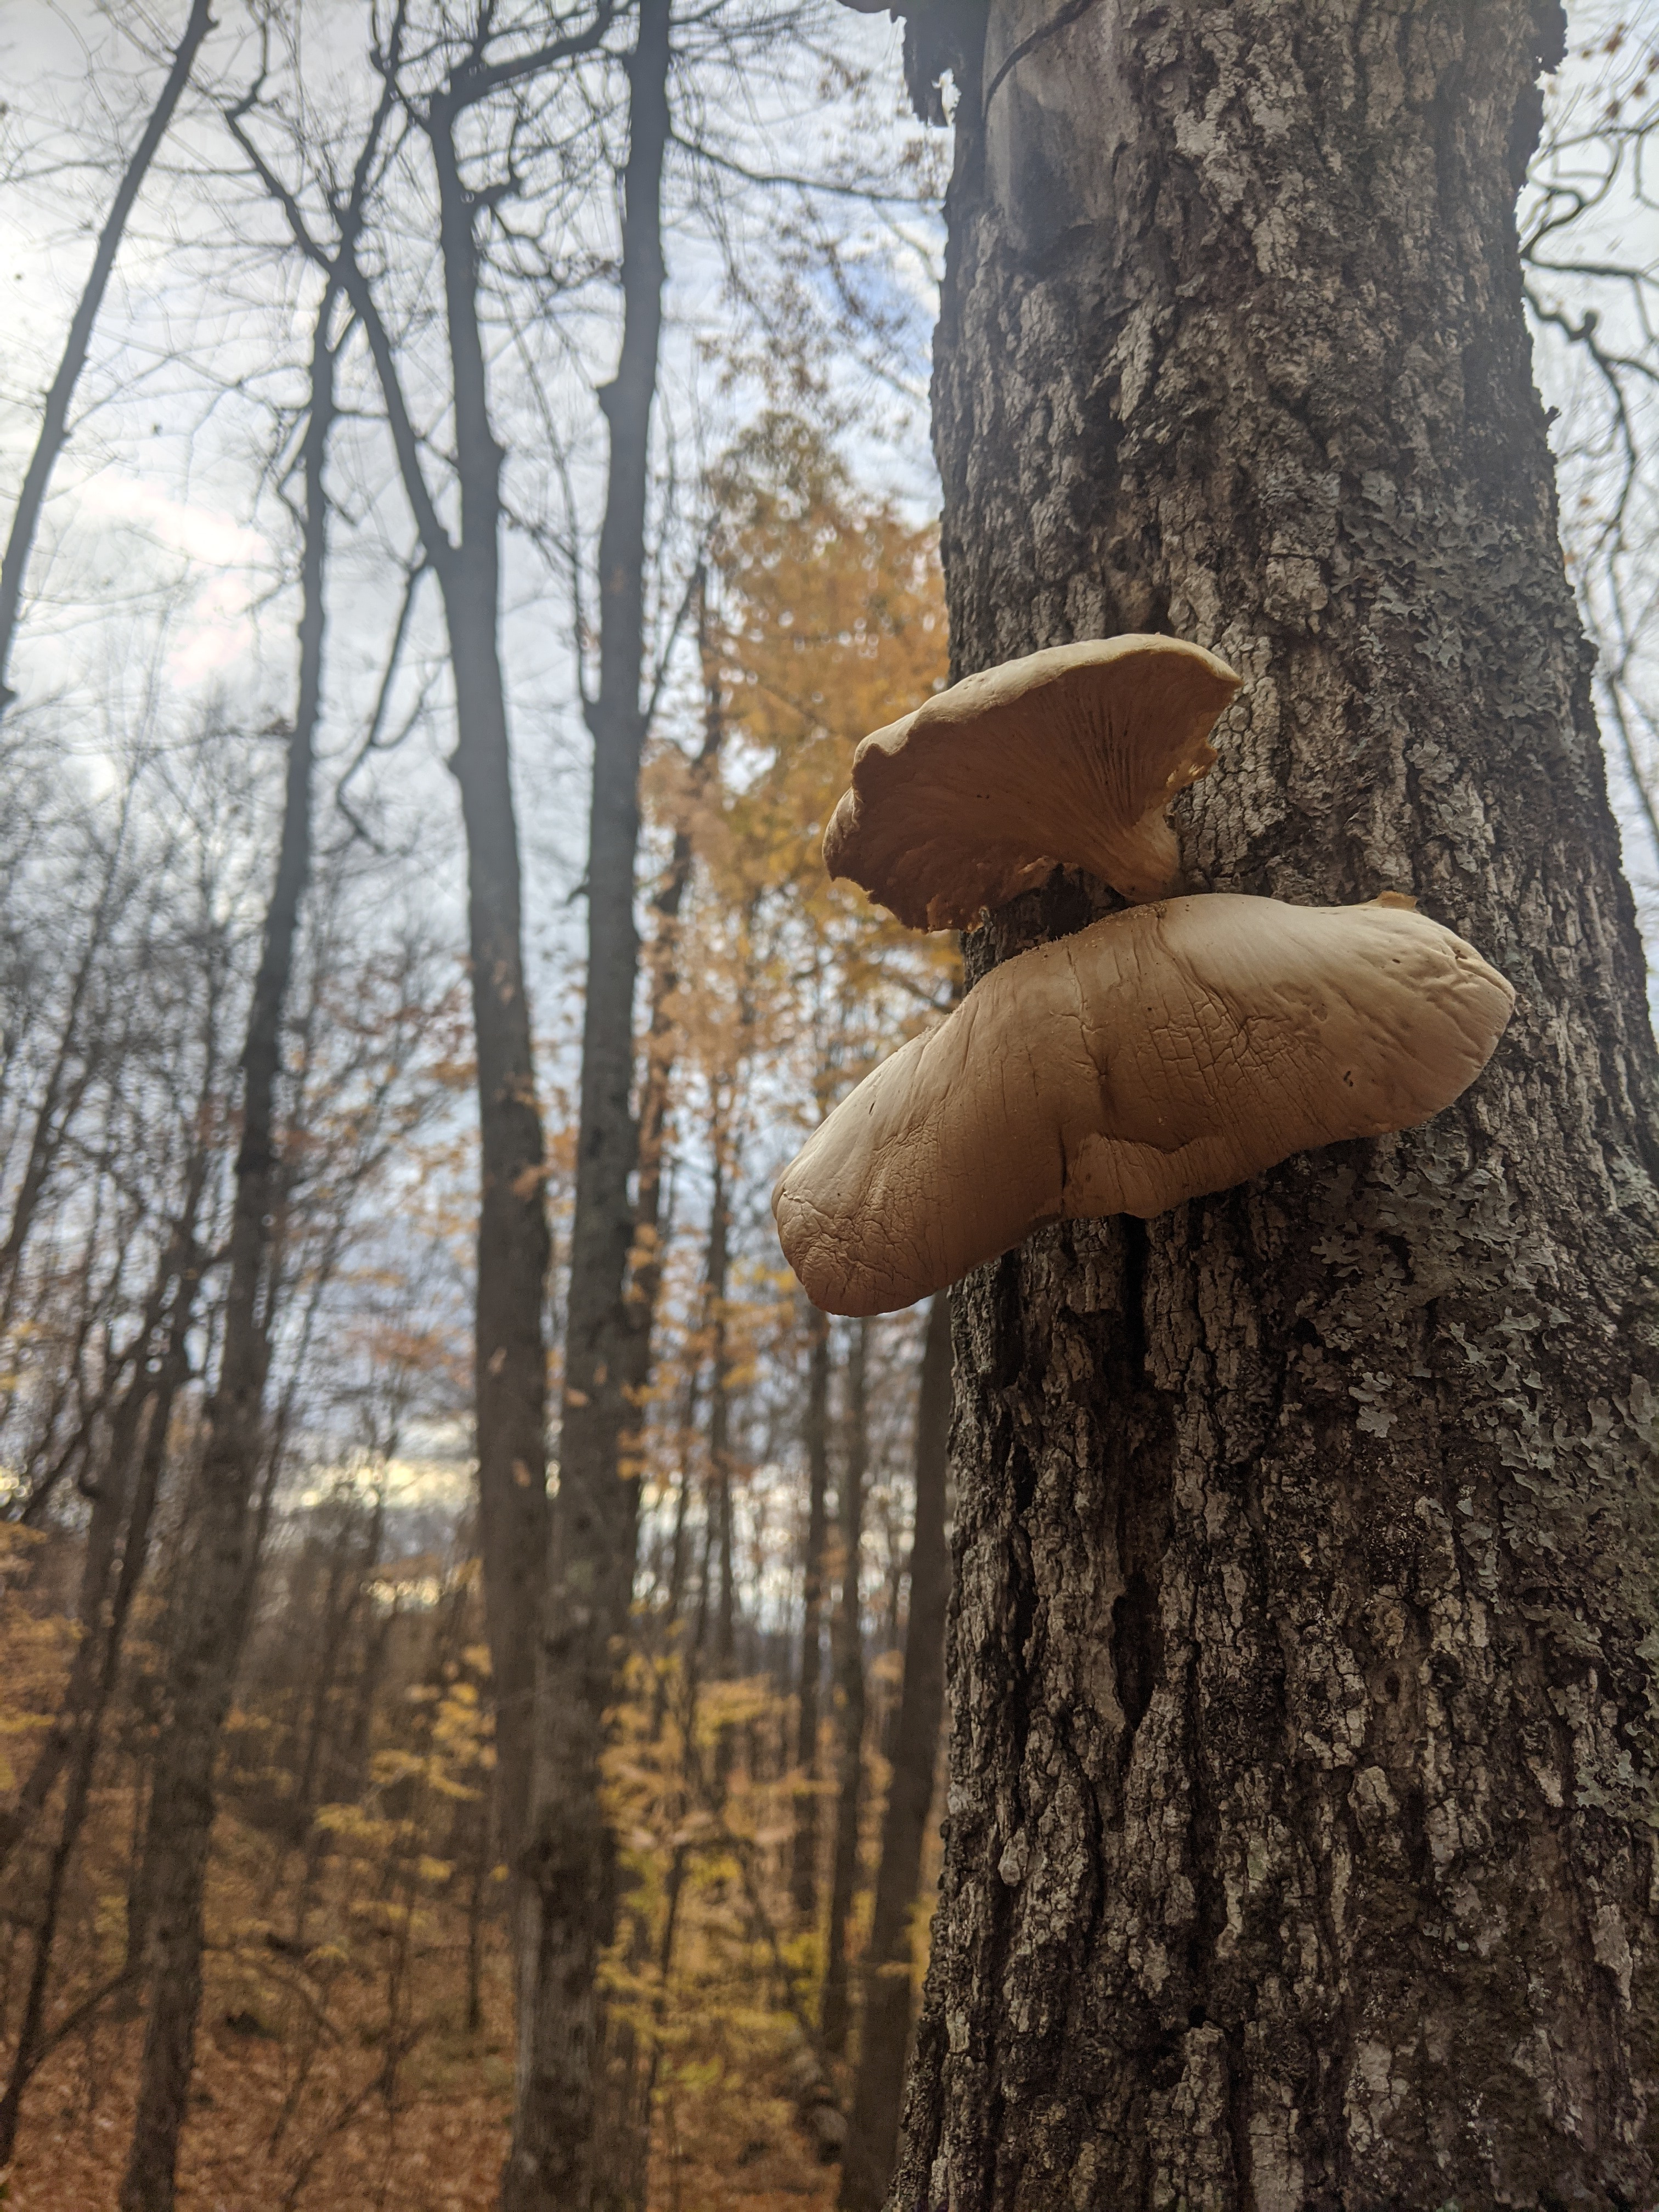 Mushrooms growing on a tree.